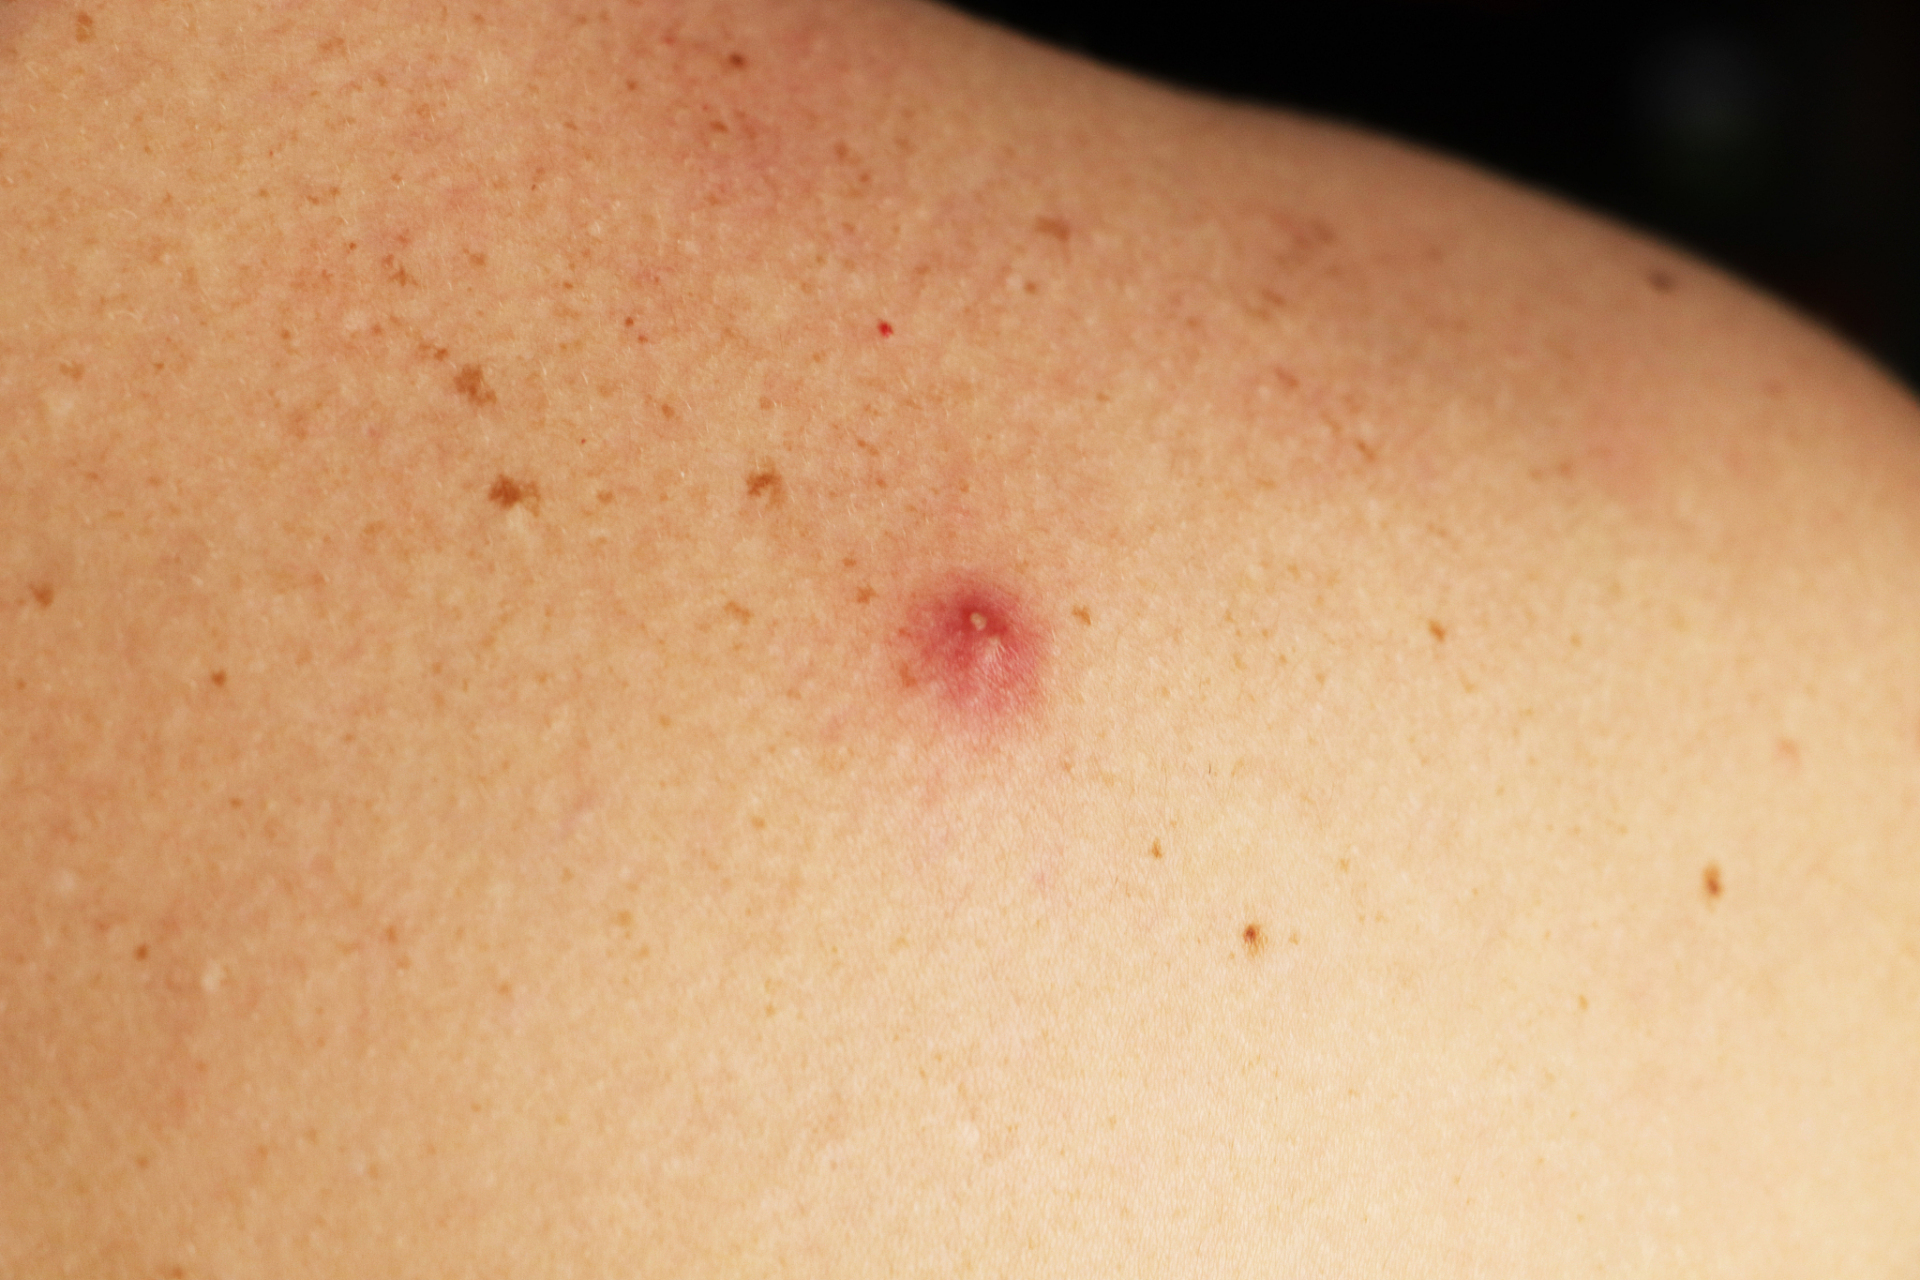 小红点可能是由多种原因引起的,包括但不限于皮肤炎症,过敏反应,血管